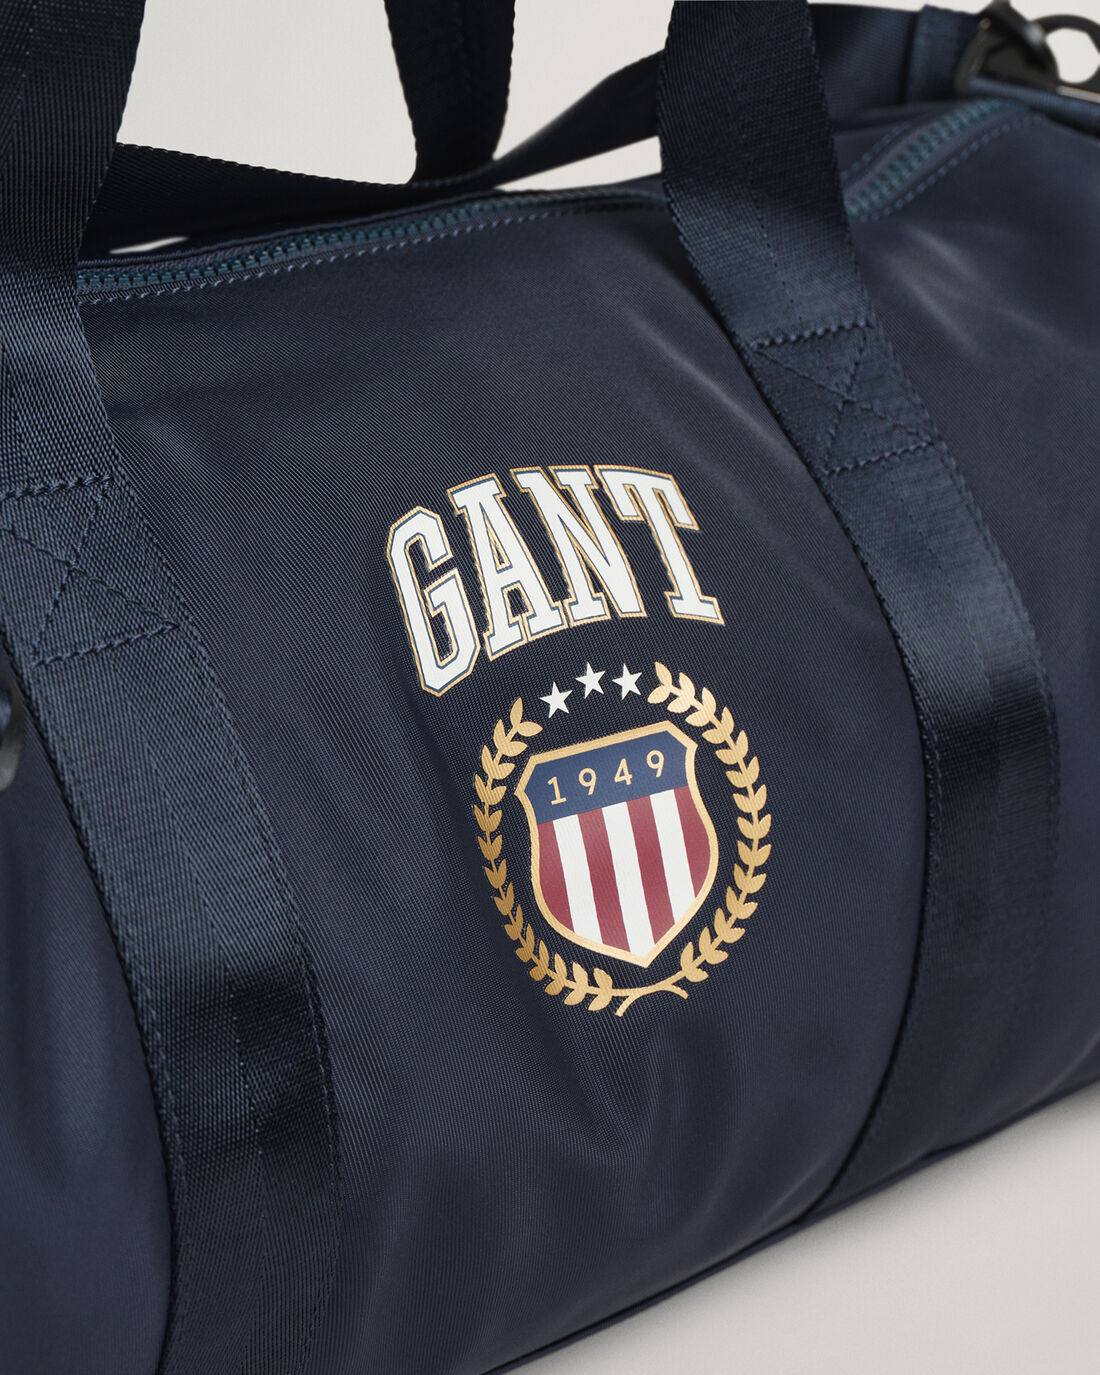 Gant Navy Retro Shield Gym Bag